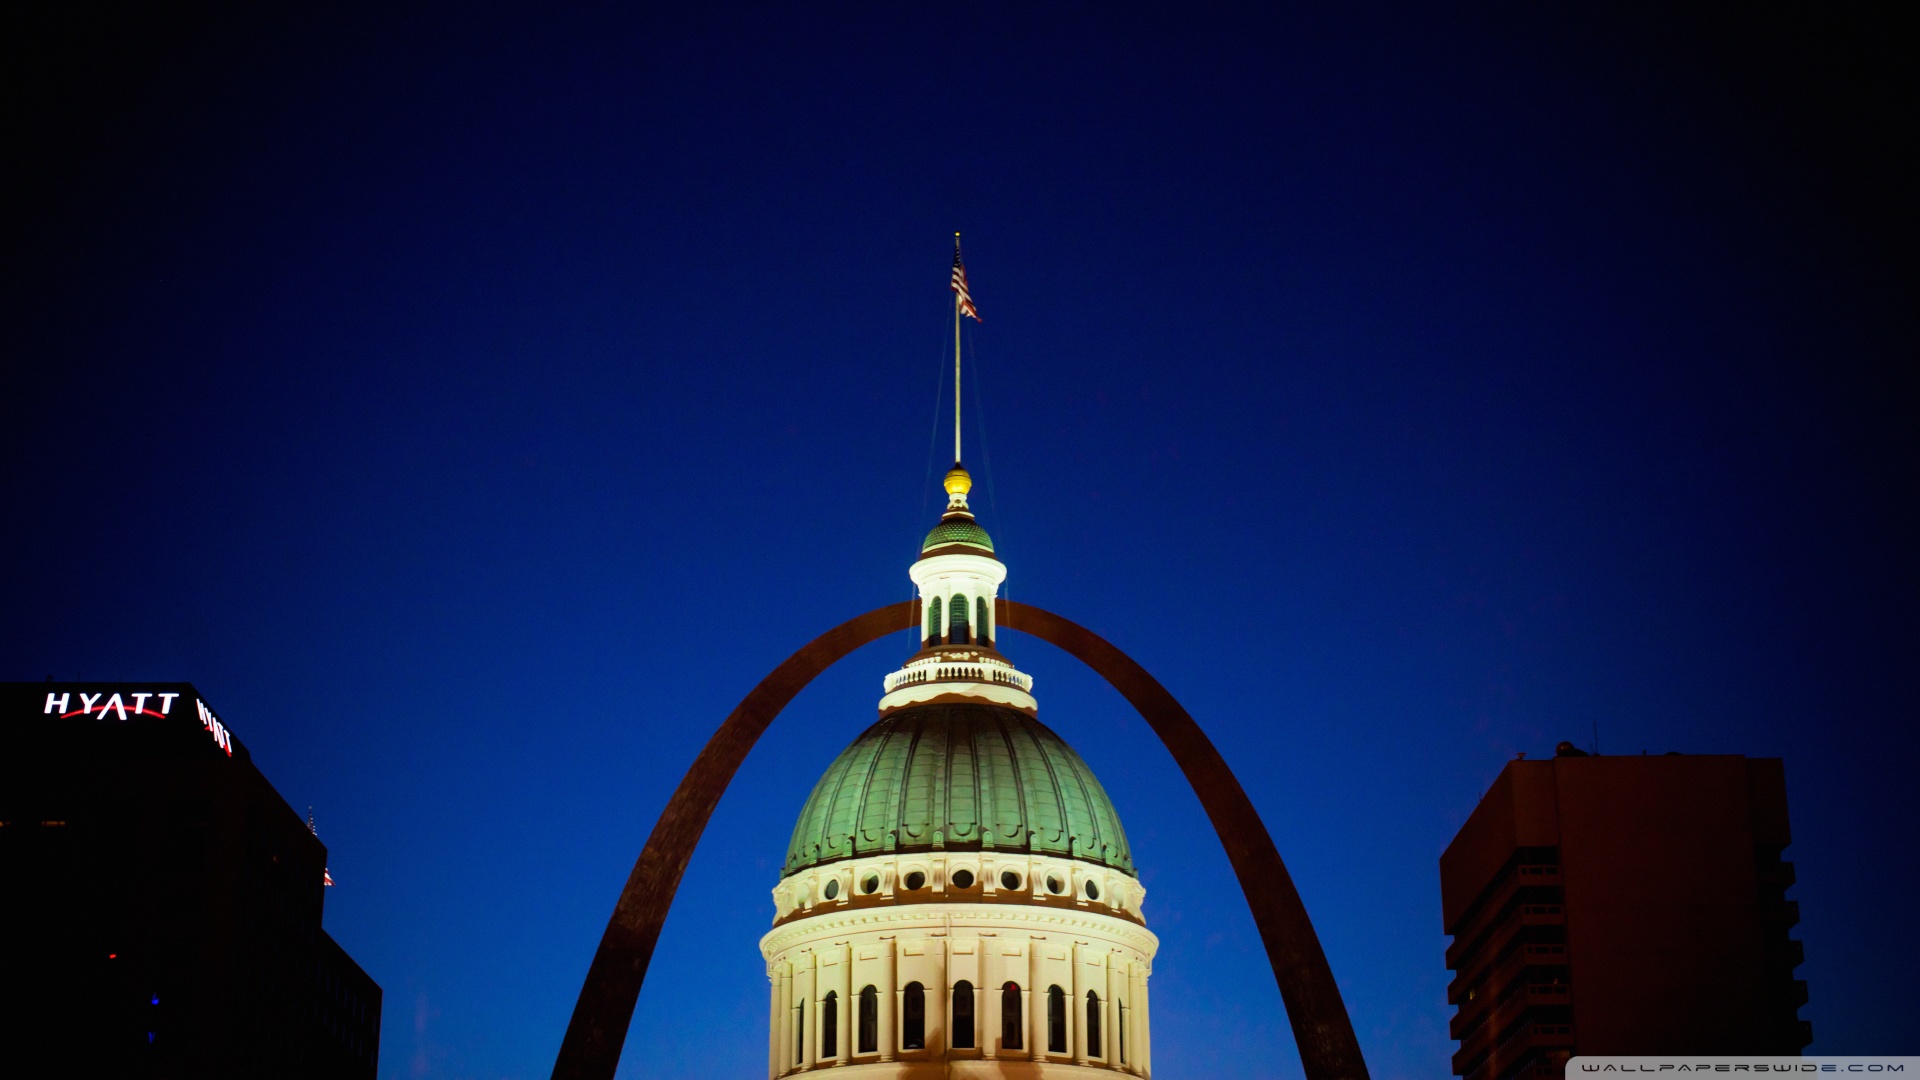 St Louis Arch HD Desktop Background Wallpaper Picture